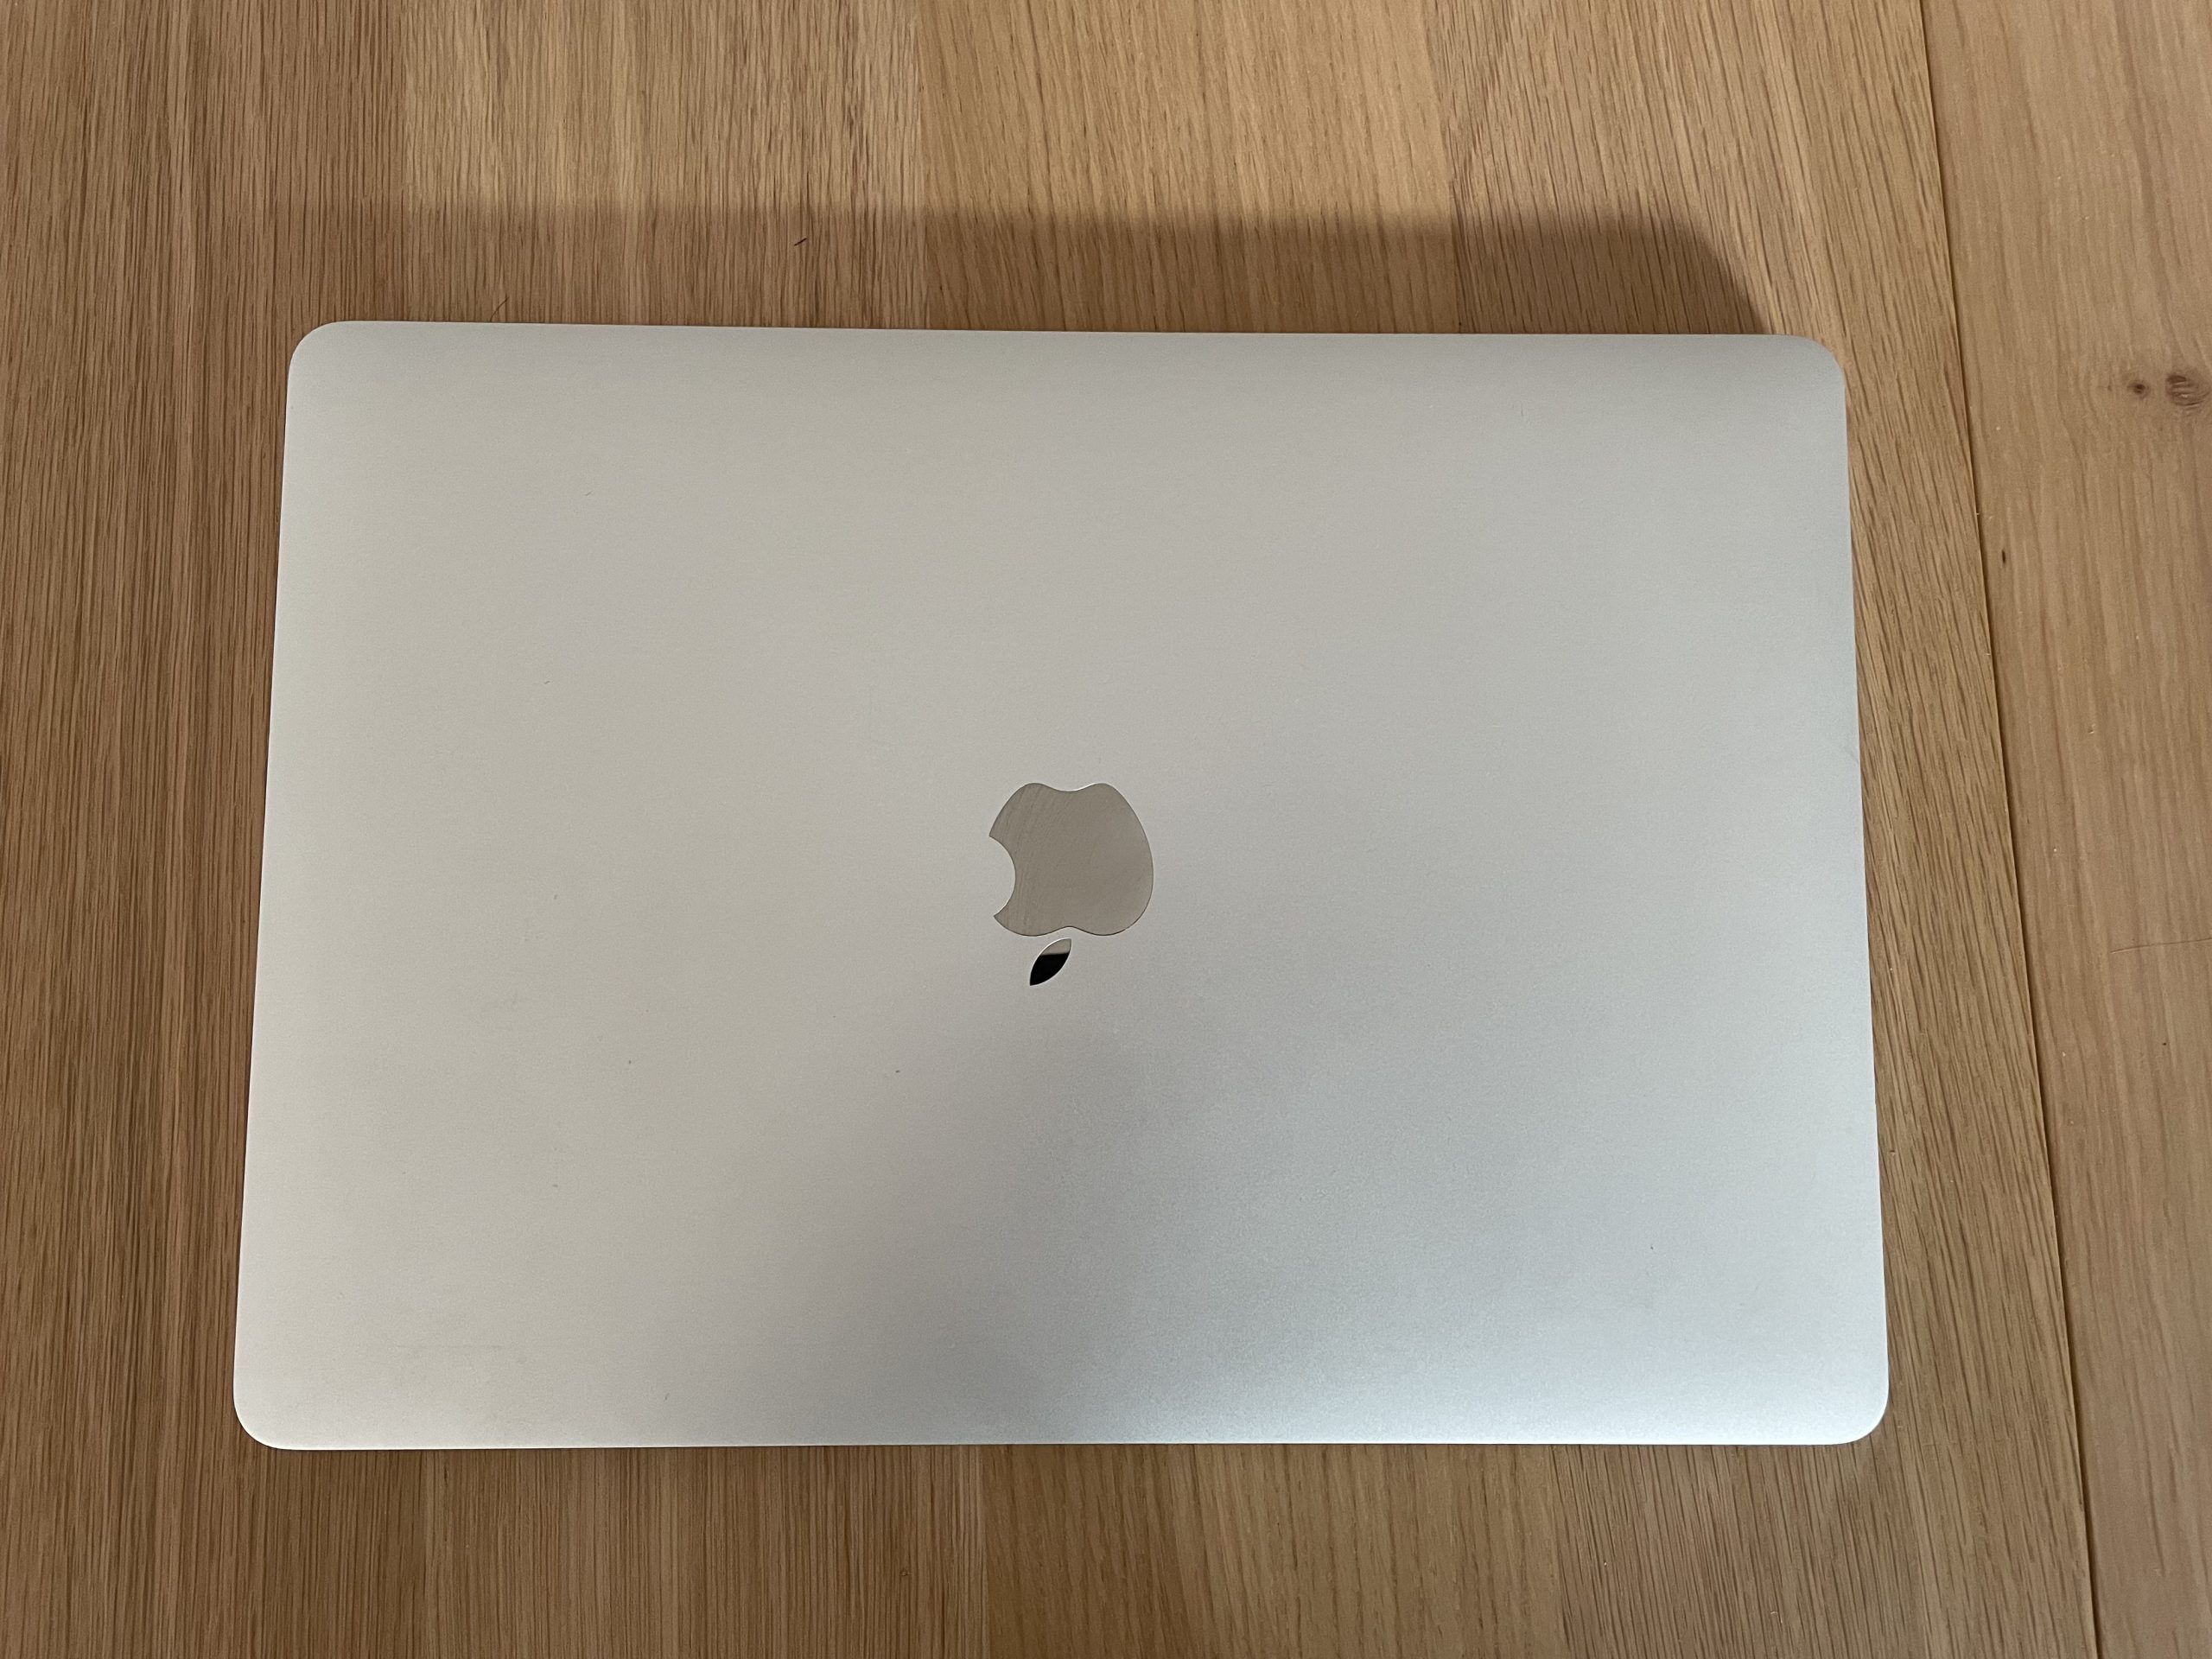 MacBook Pro 13′ 2020 – 512Go SSD 16Go RAM